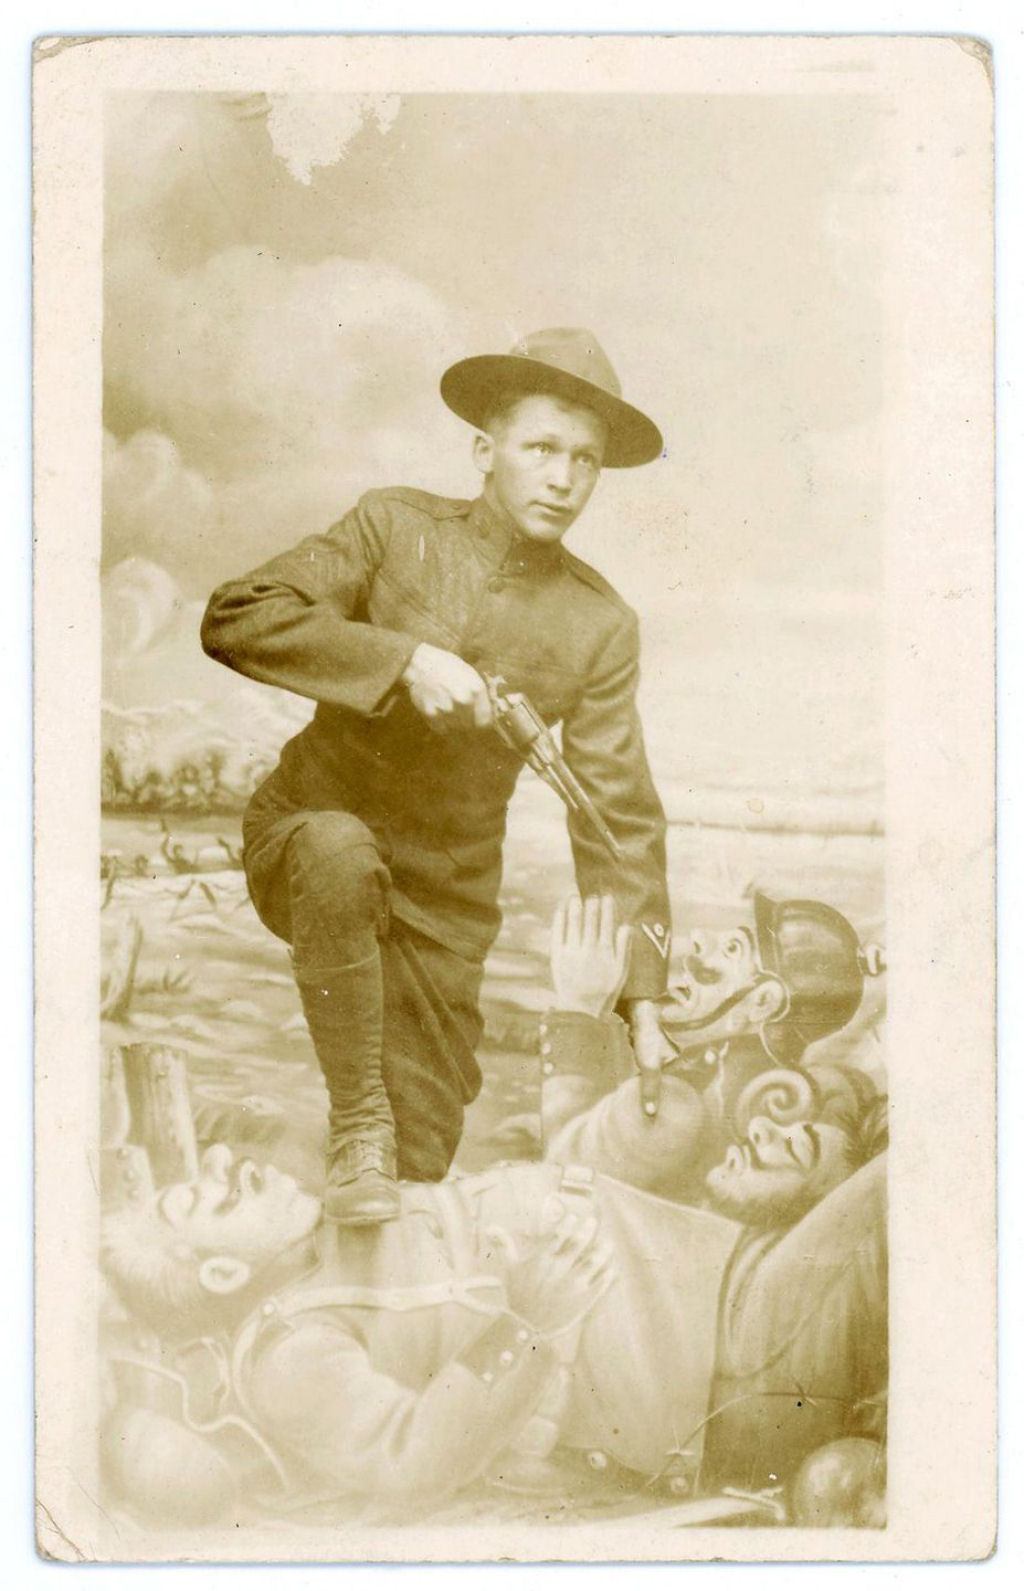 Fotos engraadas mostram soldados da Primeira Guerra Mundial posando com falsos adereos militares 29